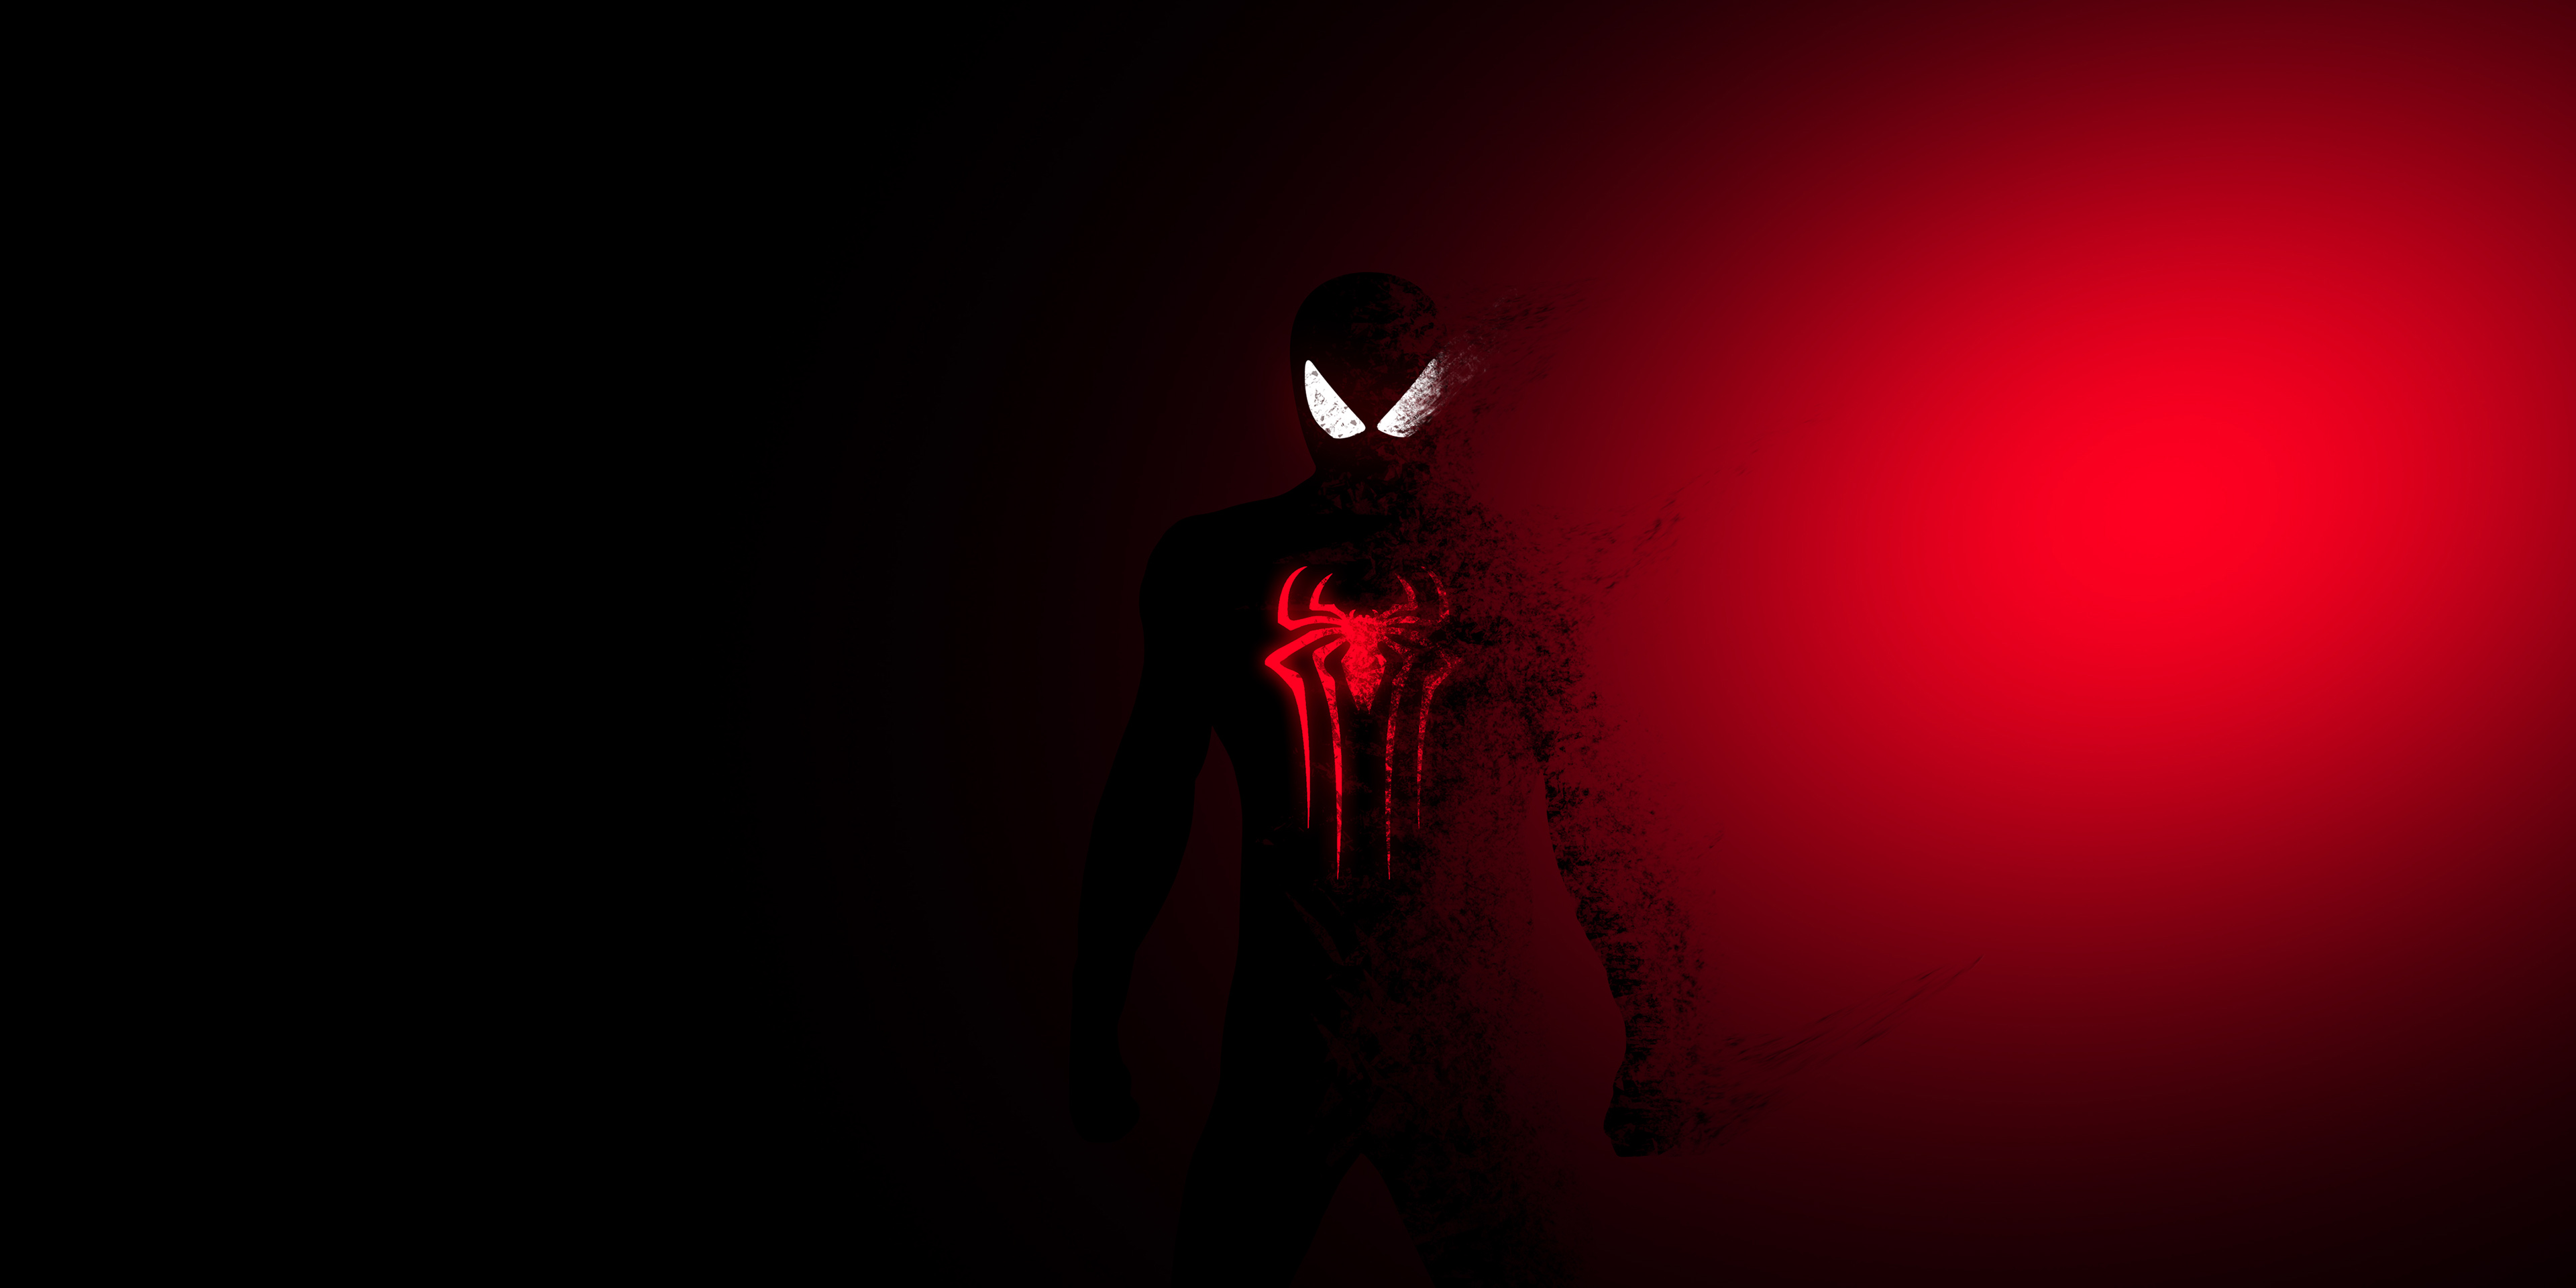 Bạn đang tìm kiếm một hình ảnh Spiderman đầy màu sắc và cuốn hút? Hãy xem ngay hình Spiderman Red Burning! Tông màu đỏ nóng bỏng và những chi tiết cuốn hút sẽ khiến bạn không thể rời mắt khỏi bức tranh này.